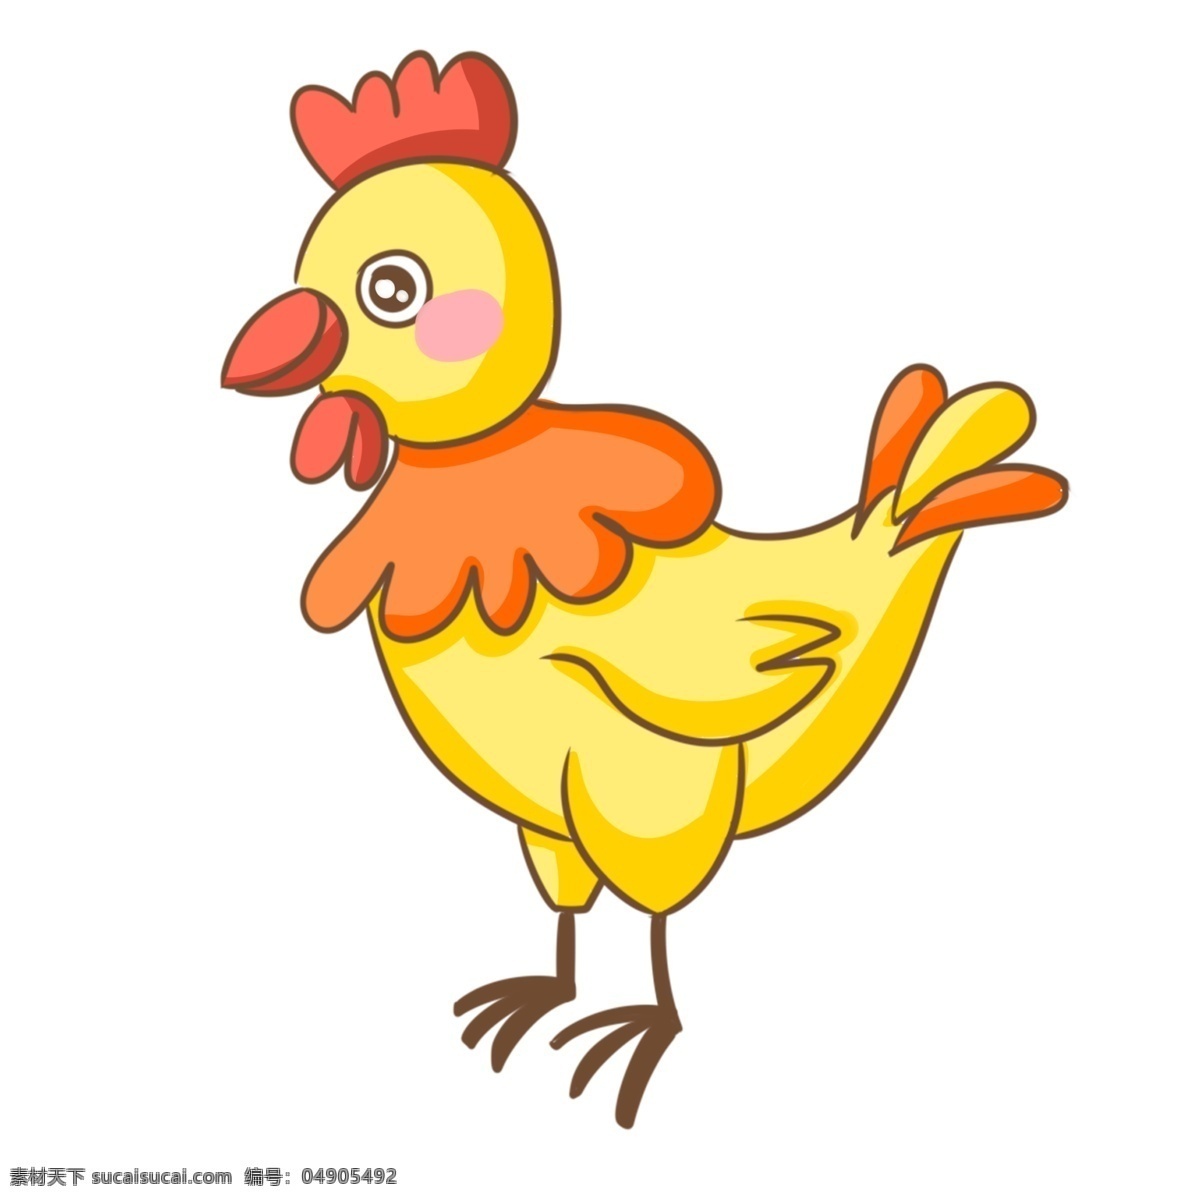 卡通 黄色 小 公鸡 插画 卡通公鸡 手绘公鸡 鸡冠 家禽 动物 可爱 黄色小公鸡 红色鸡脖 棕色爪子